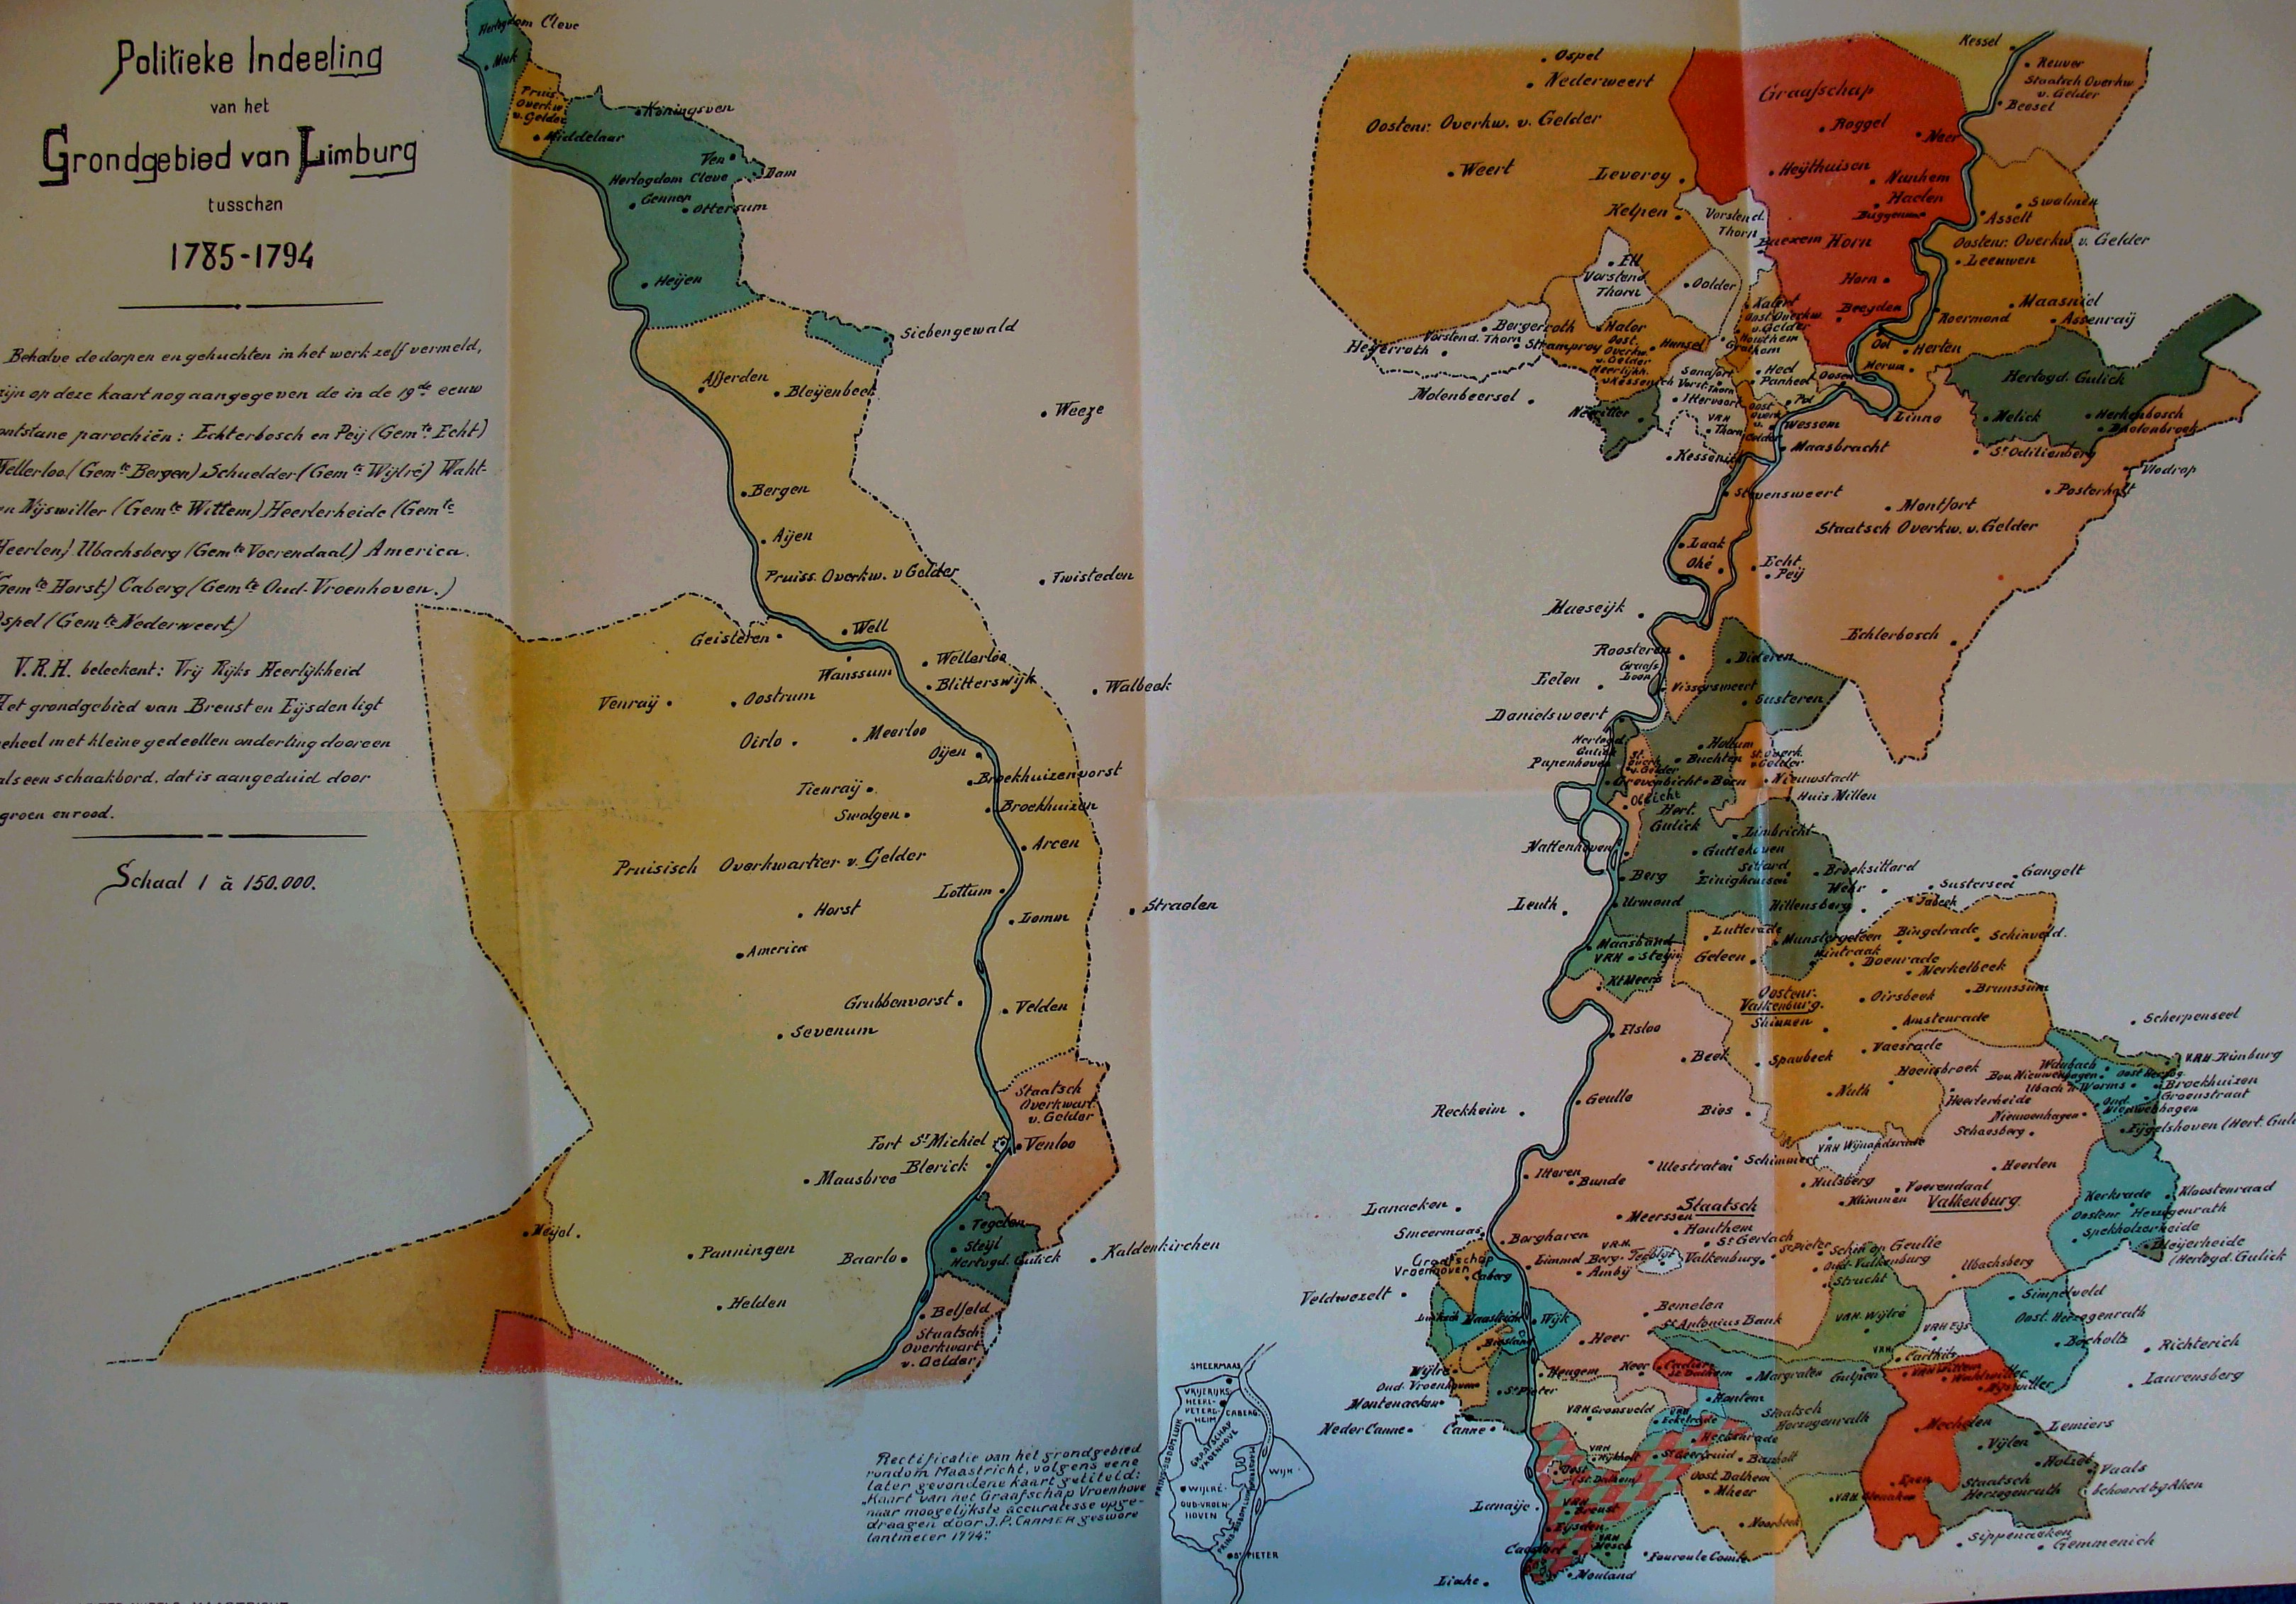 Limburg 1785-1794 (Publications 1903)